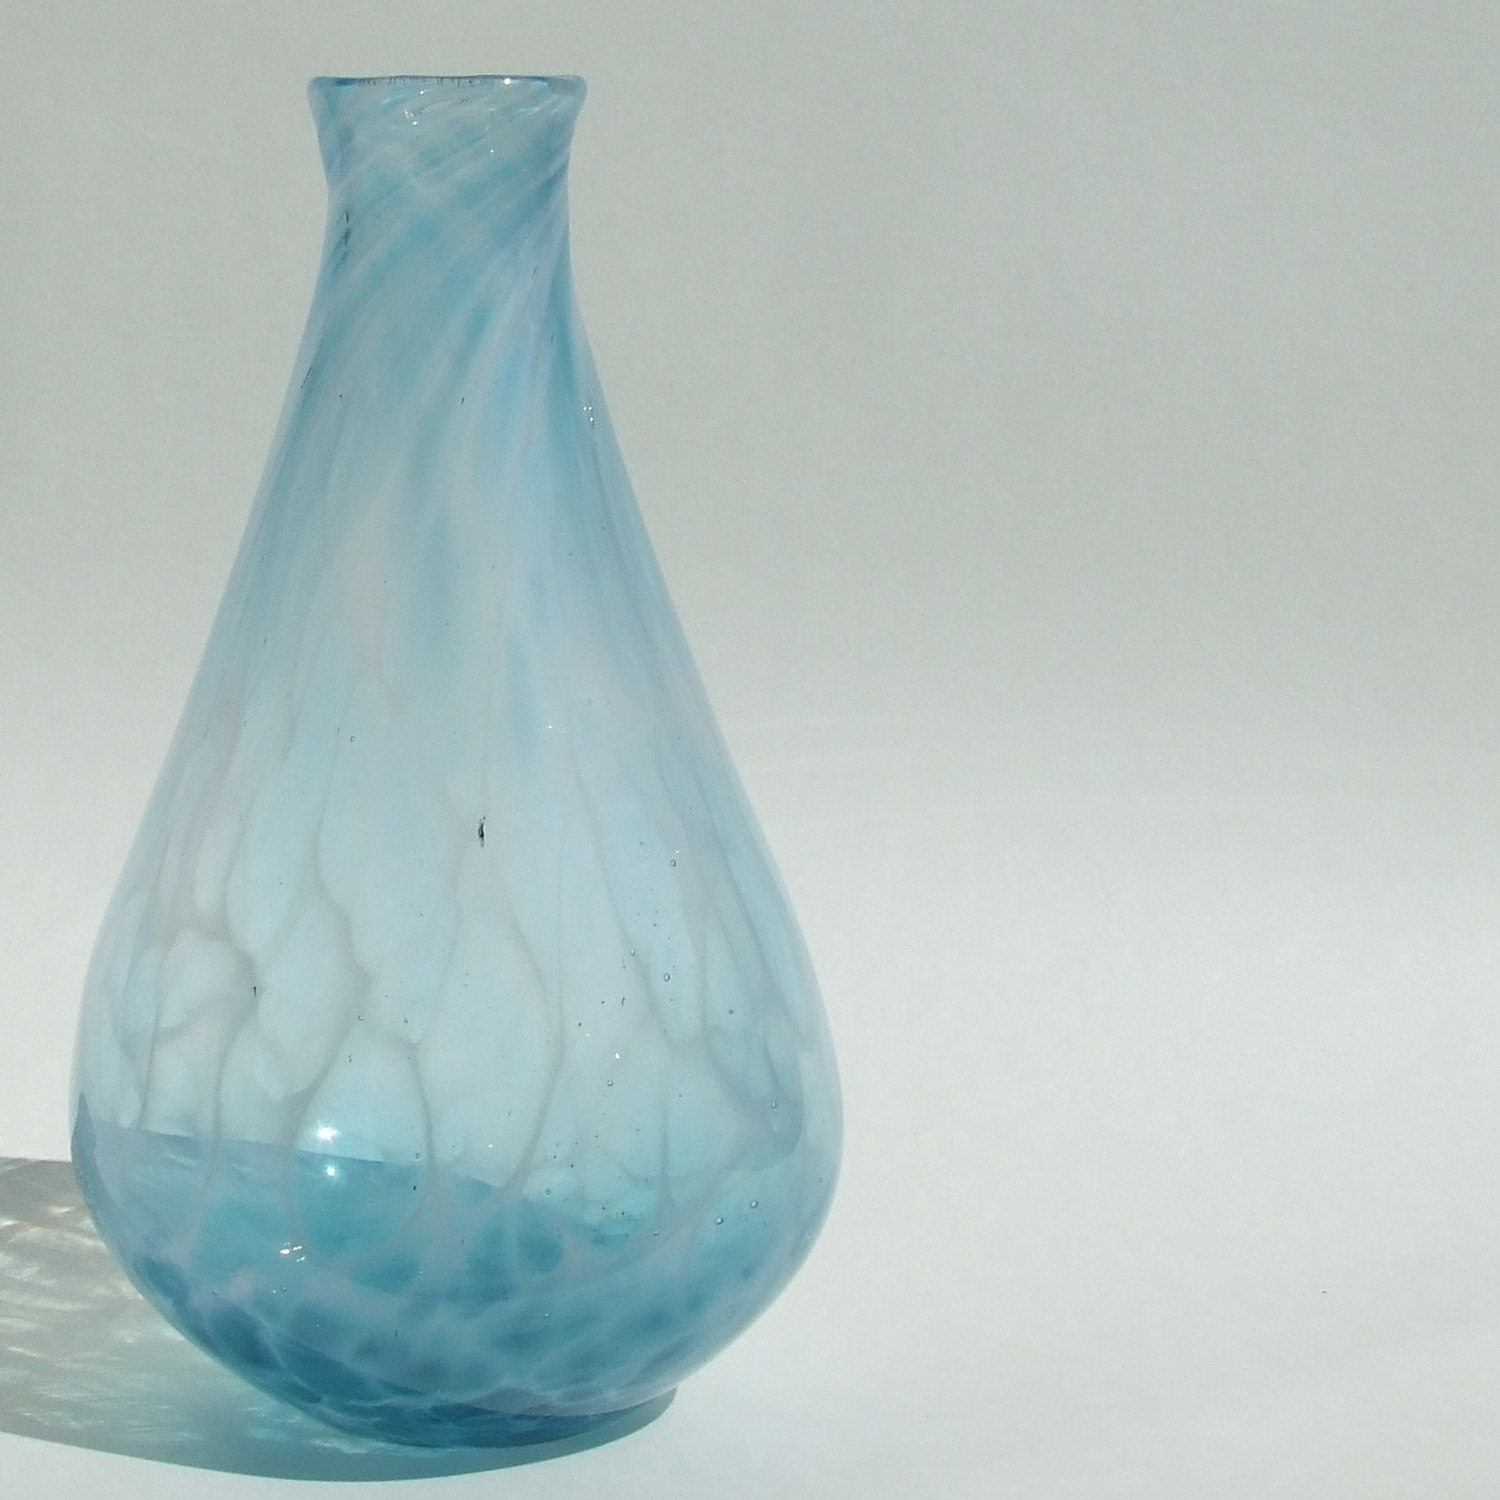 Handblown Glass Wisp Vase